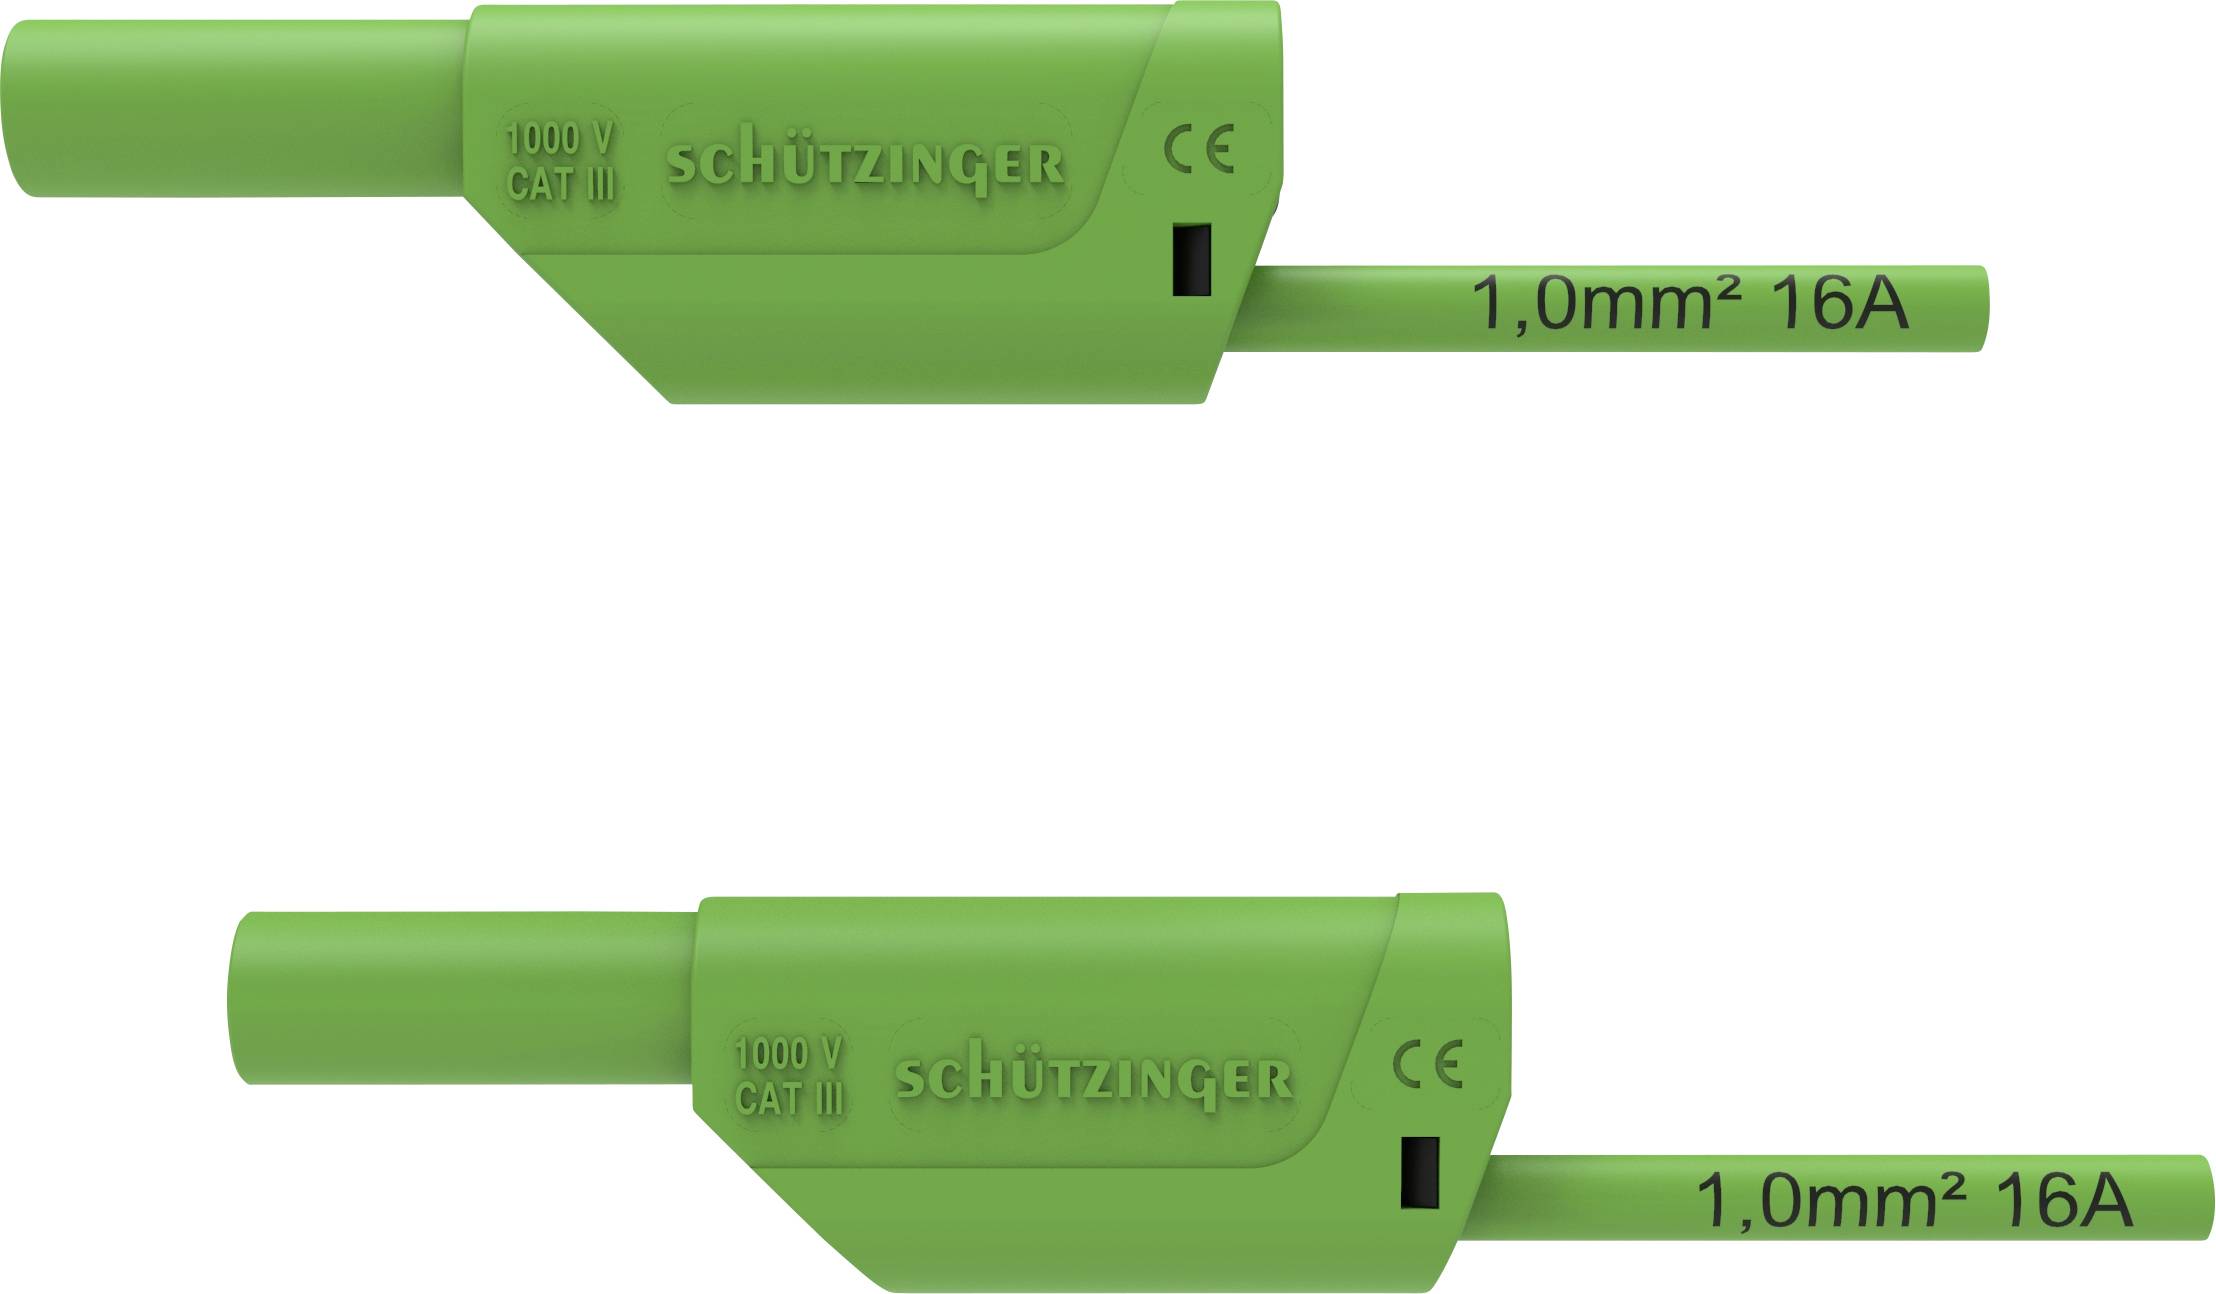 SCHÜTZINGER VSFK 8700 / 1 / 100 / GN Sicherheits-Messleitung [4 mm-Stecker - 4 mm-Stecker] 100.